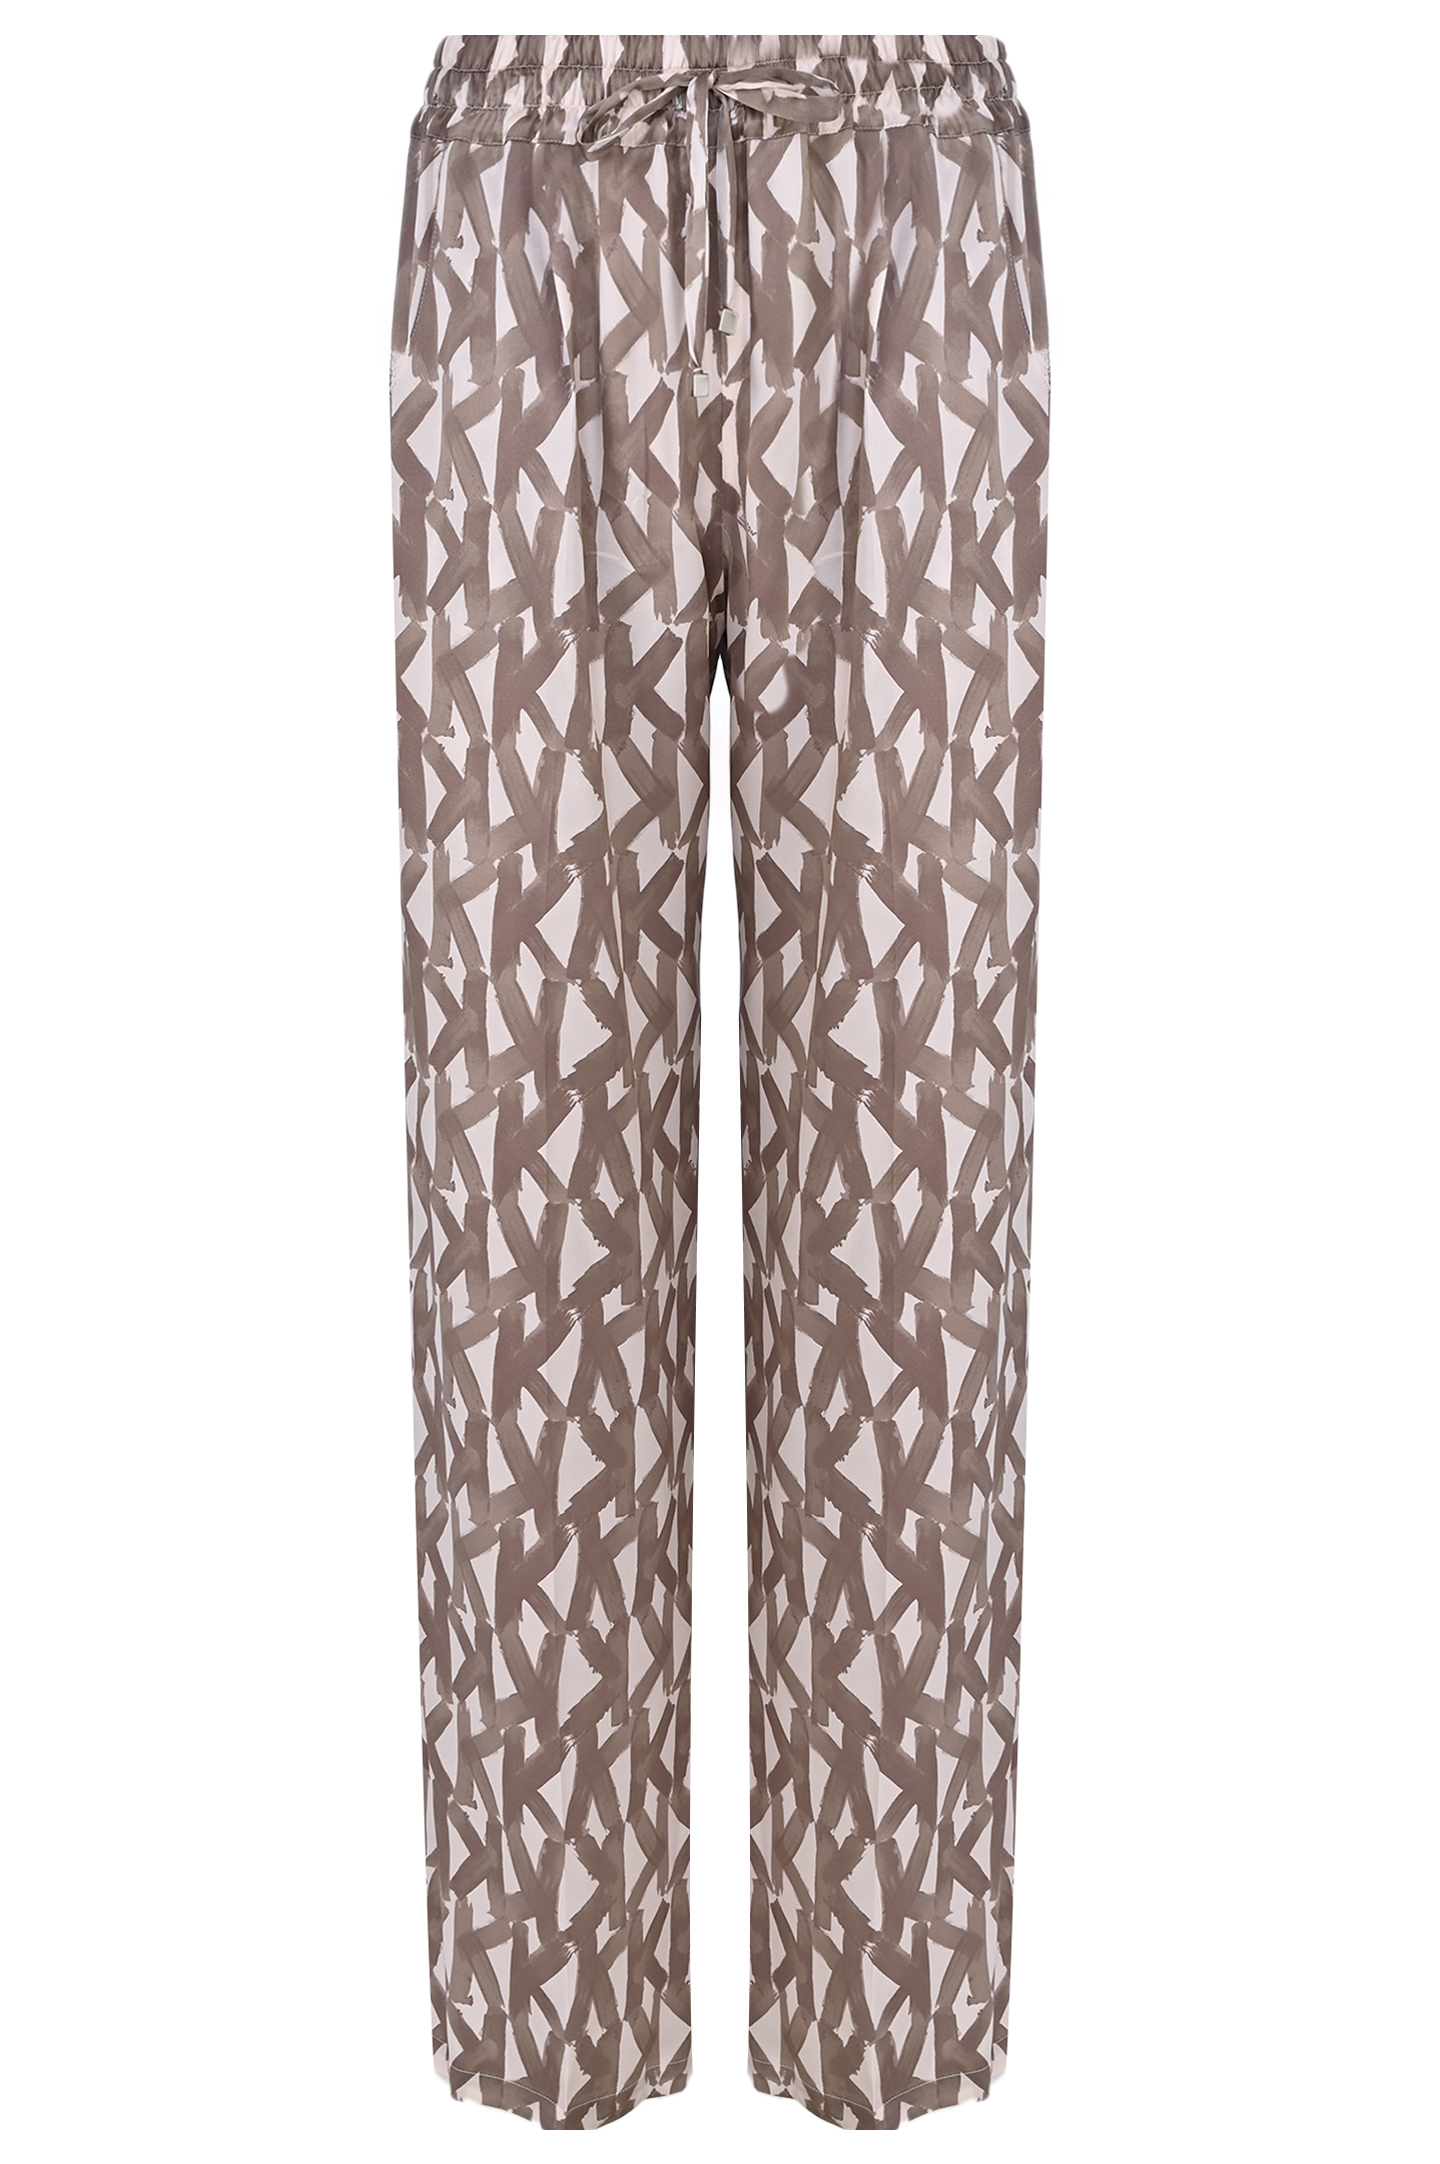 Широкие шелковые брюки с принтом KITON D48122K0978C1, цвет: Бежевый, Женский